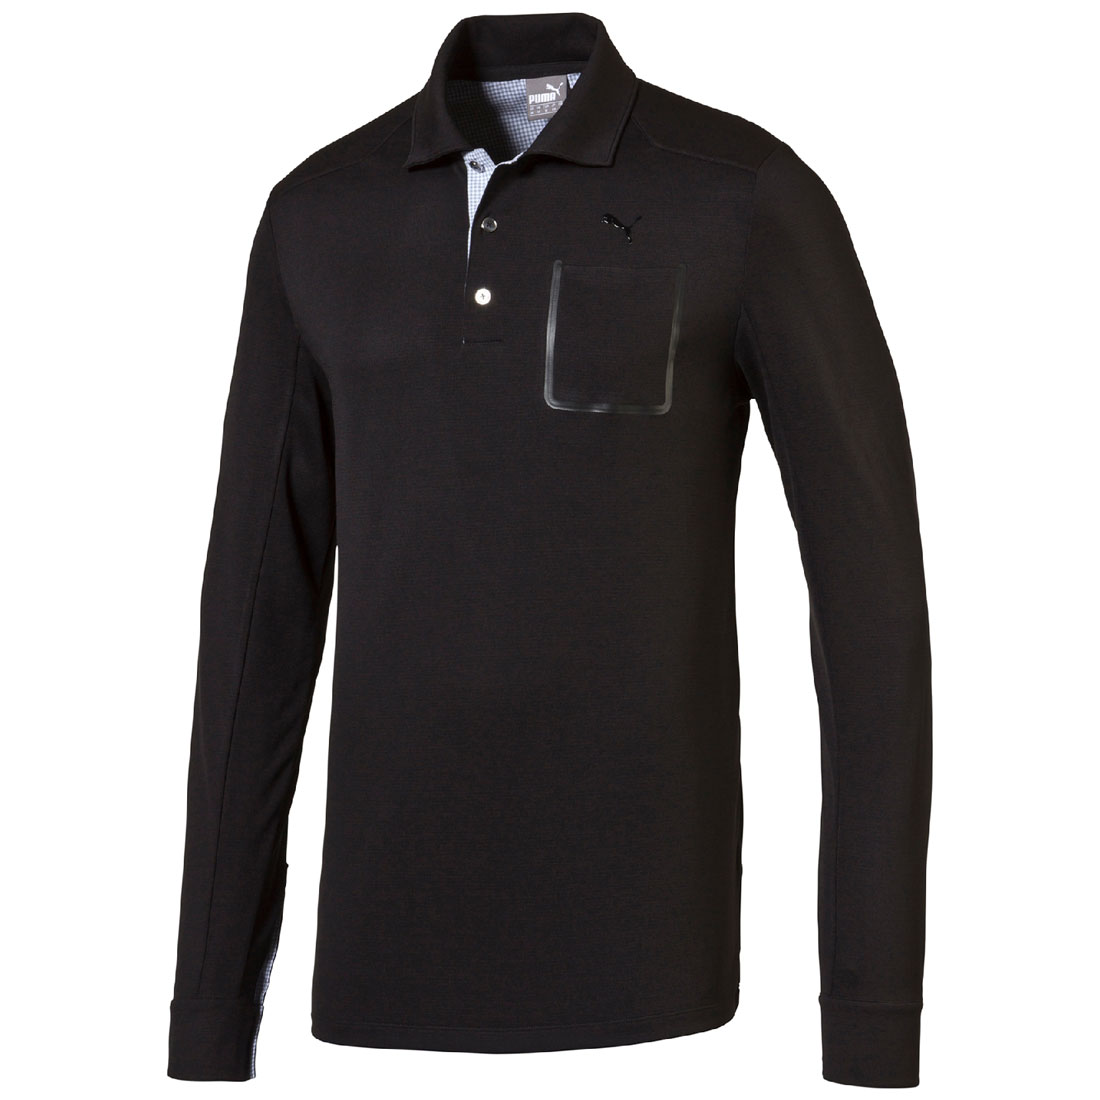 Puma Golf Lux Blend LS Polo Shirt Dry Cell Tech Herren Longsleeve 